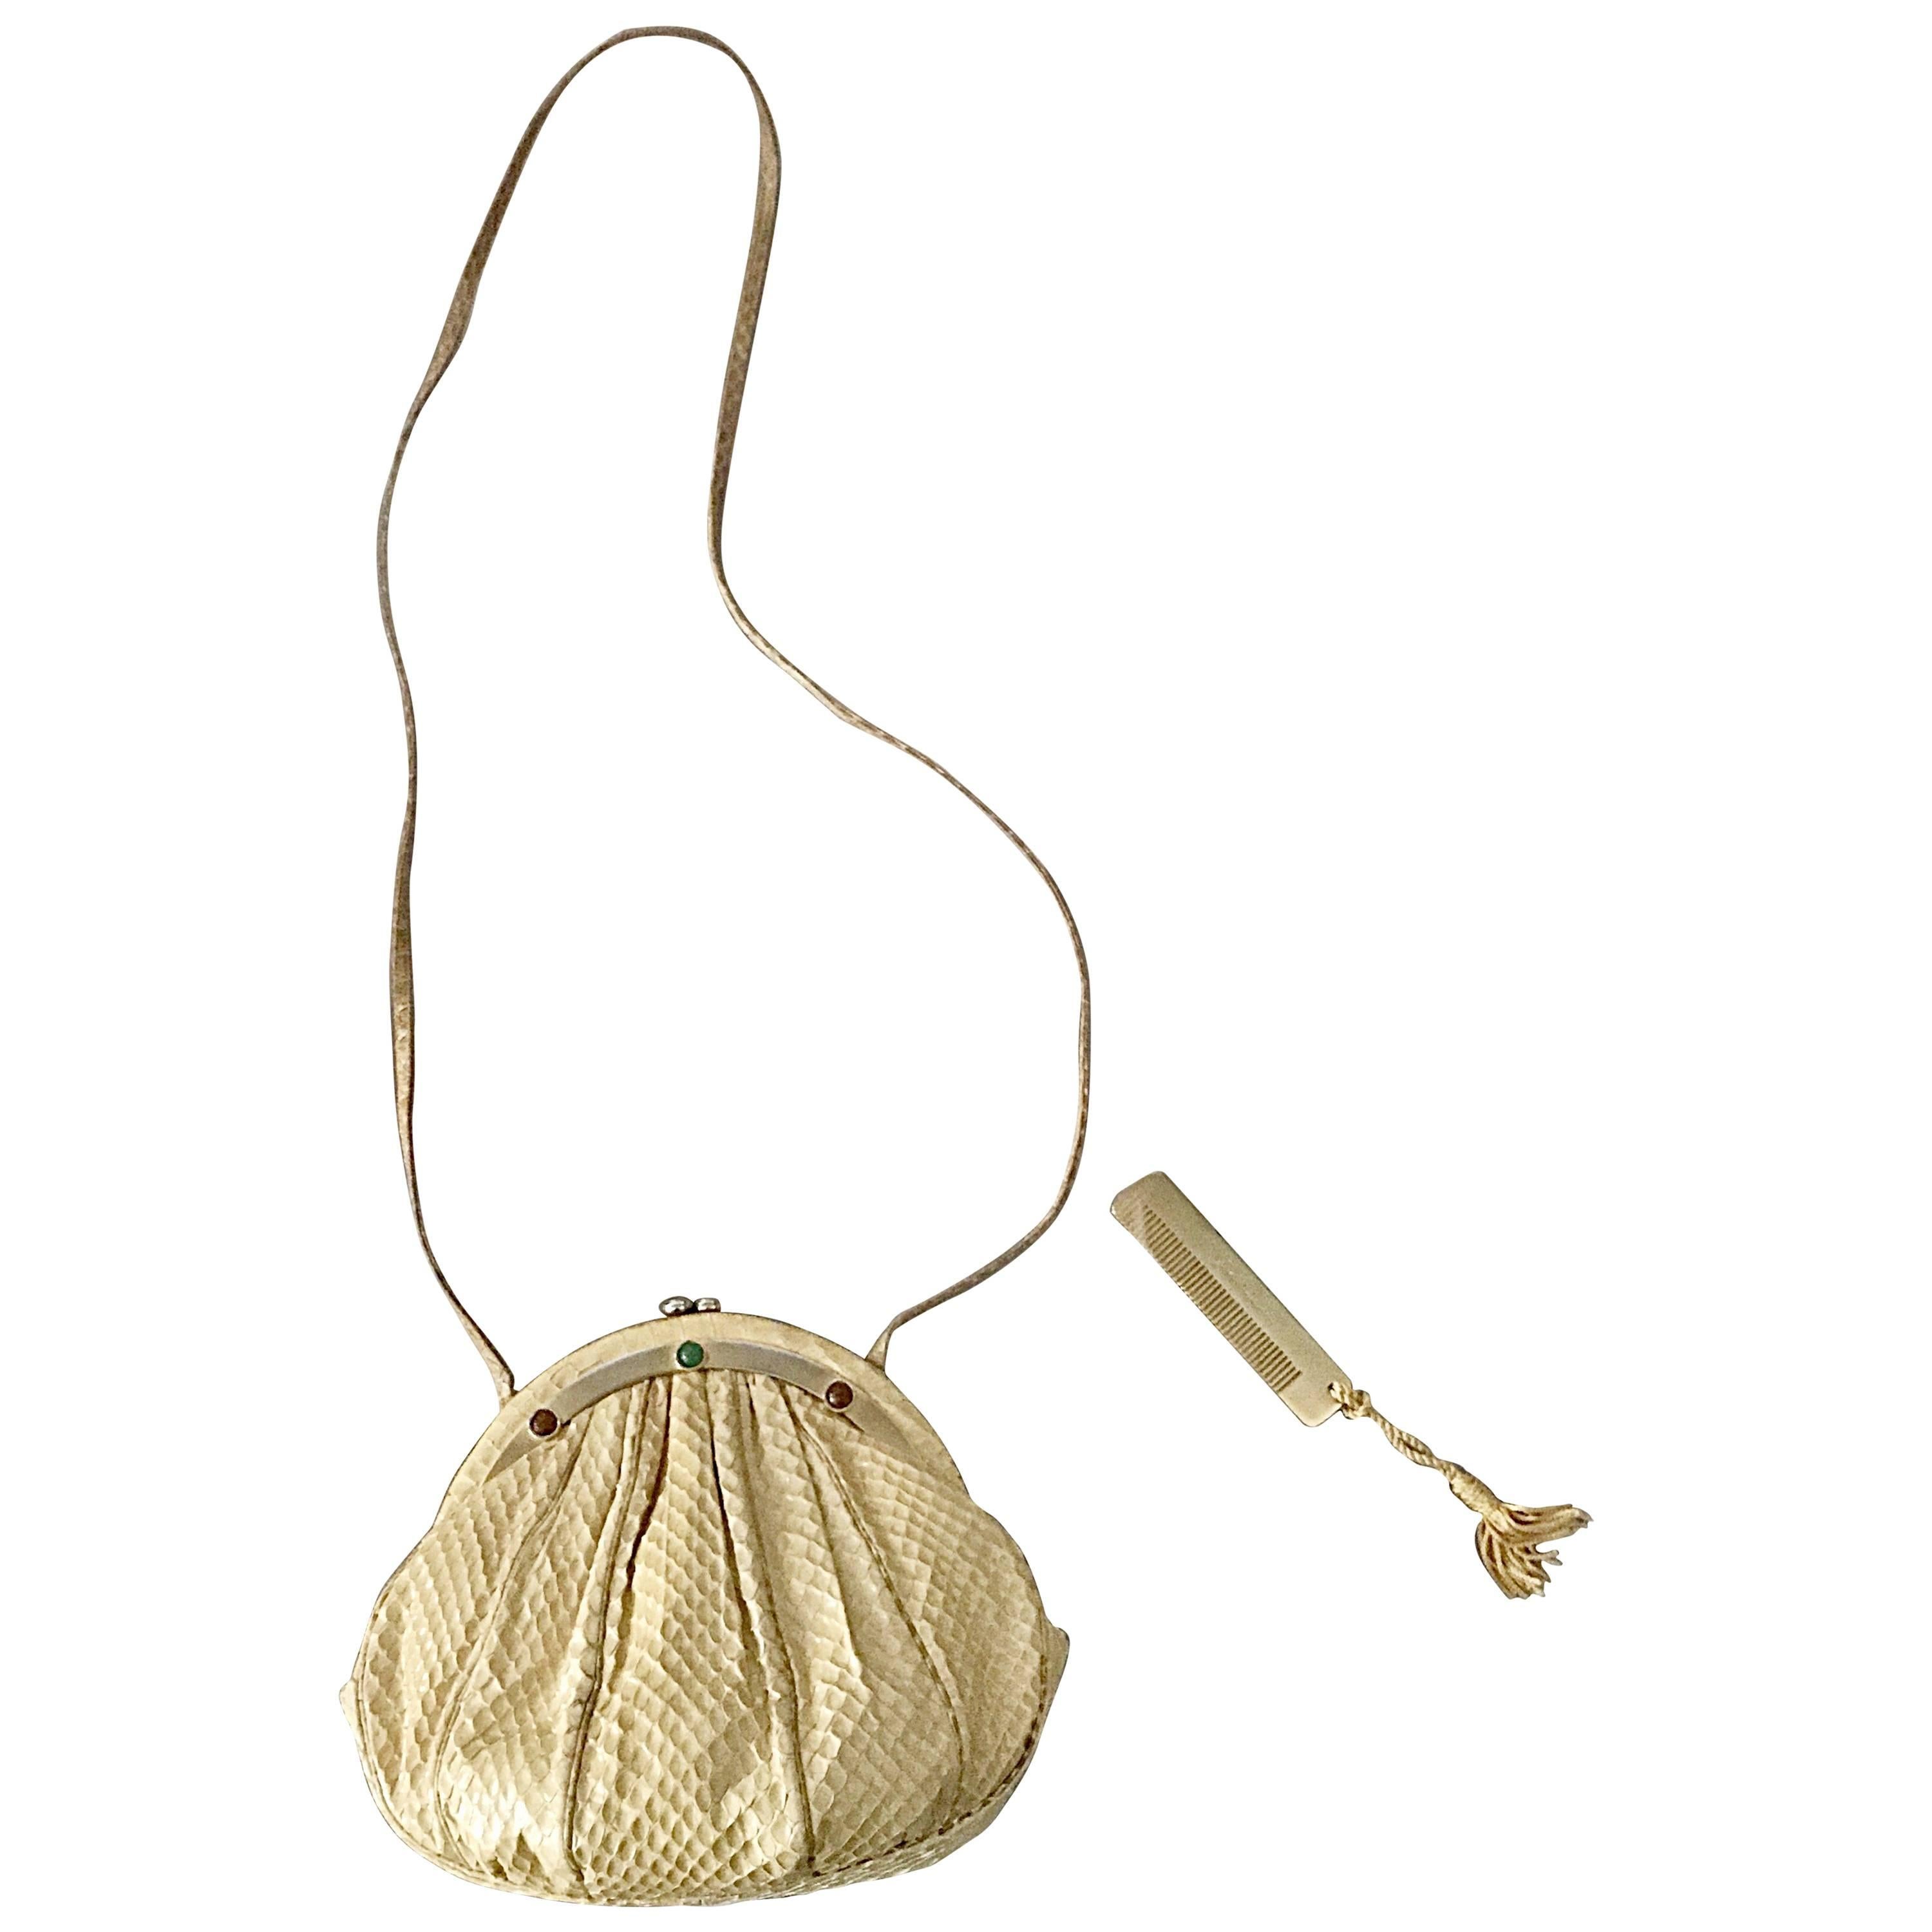 Vintage Judith Leiber Python Snakeskin Nude Tan Jeweled Shoulder Bag or Clutch 